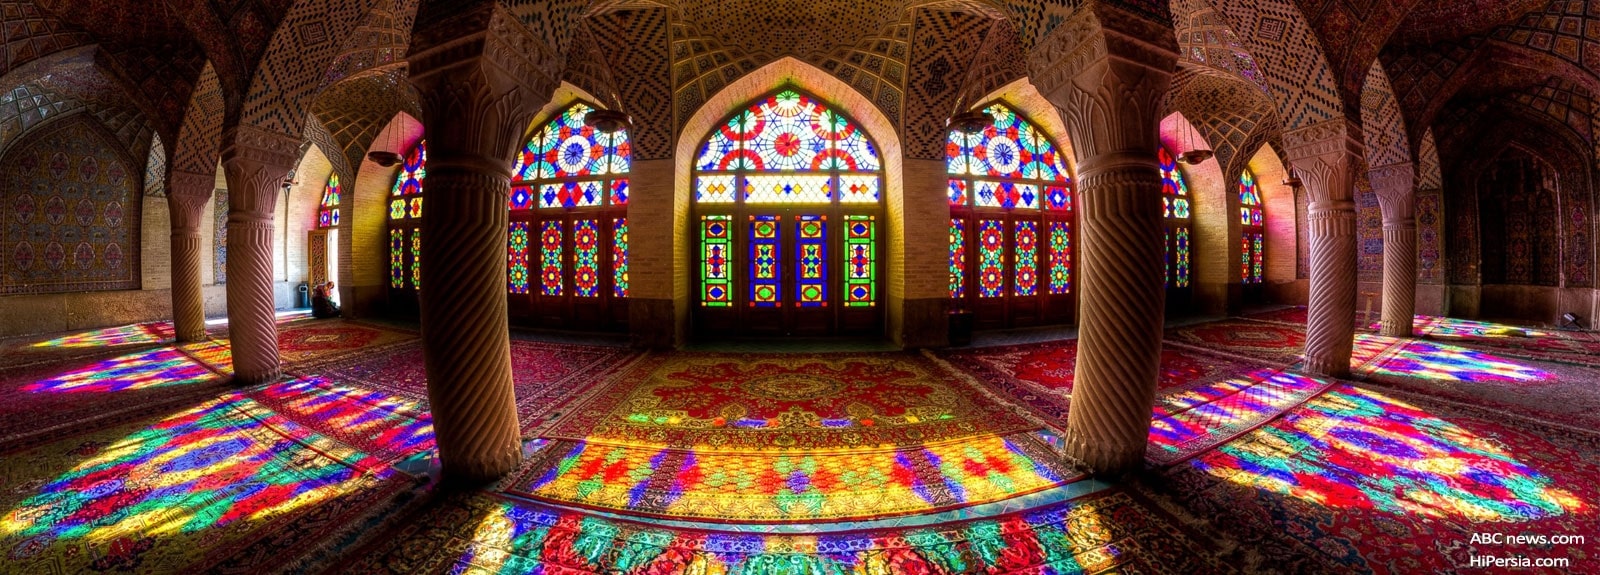 Travel Guide to Shiraz Iran